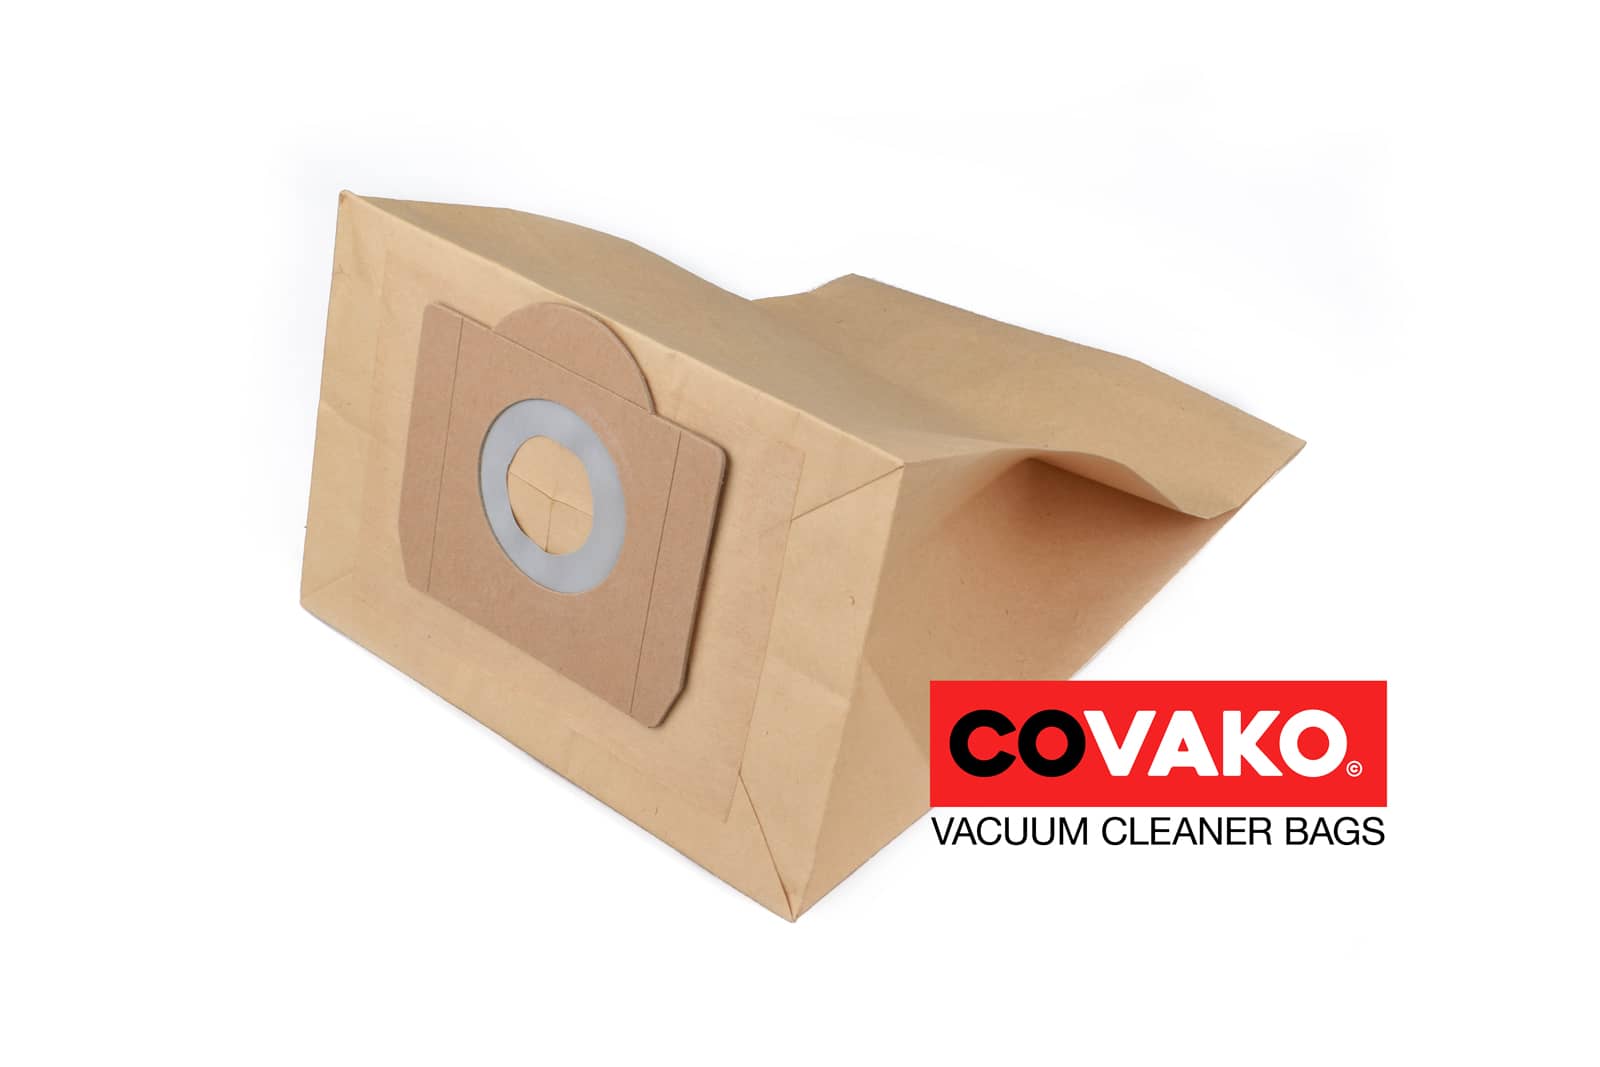 DiBo Windly 215 IPC / Paper - DiBo vacuum cleaner bags